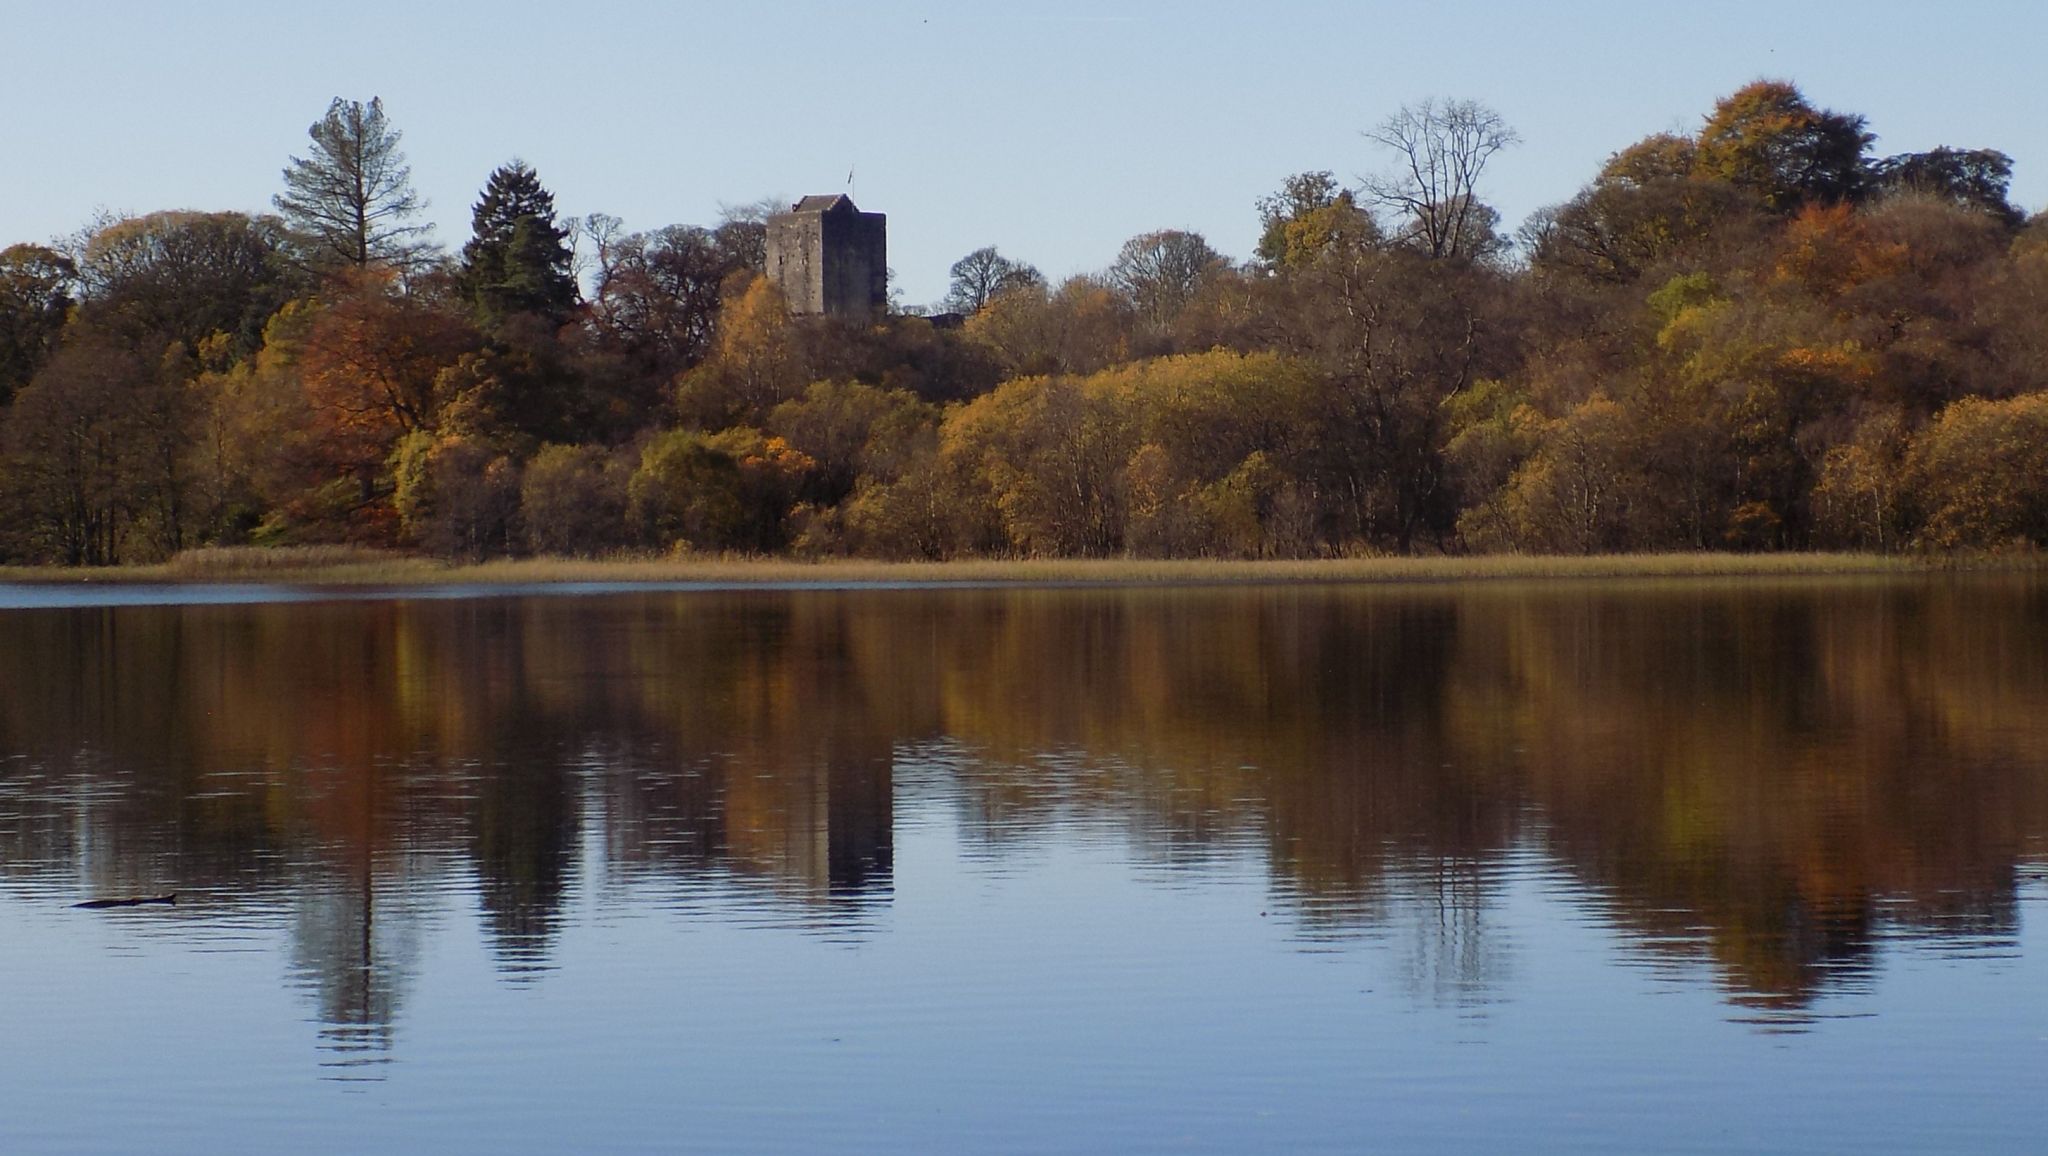 Mugdock Loch and Castle in Mugdock Country Park